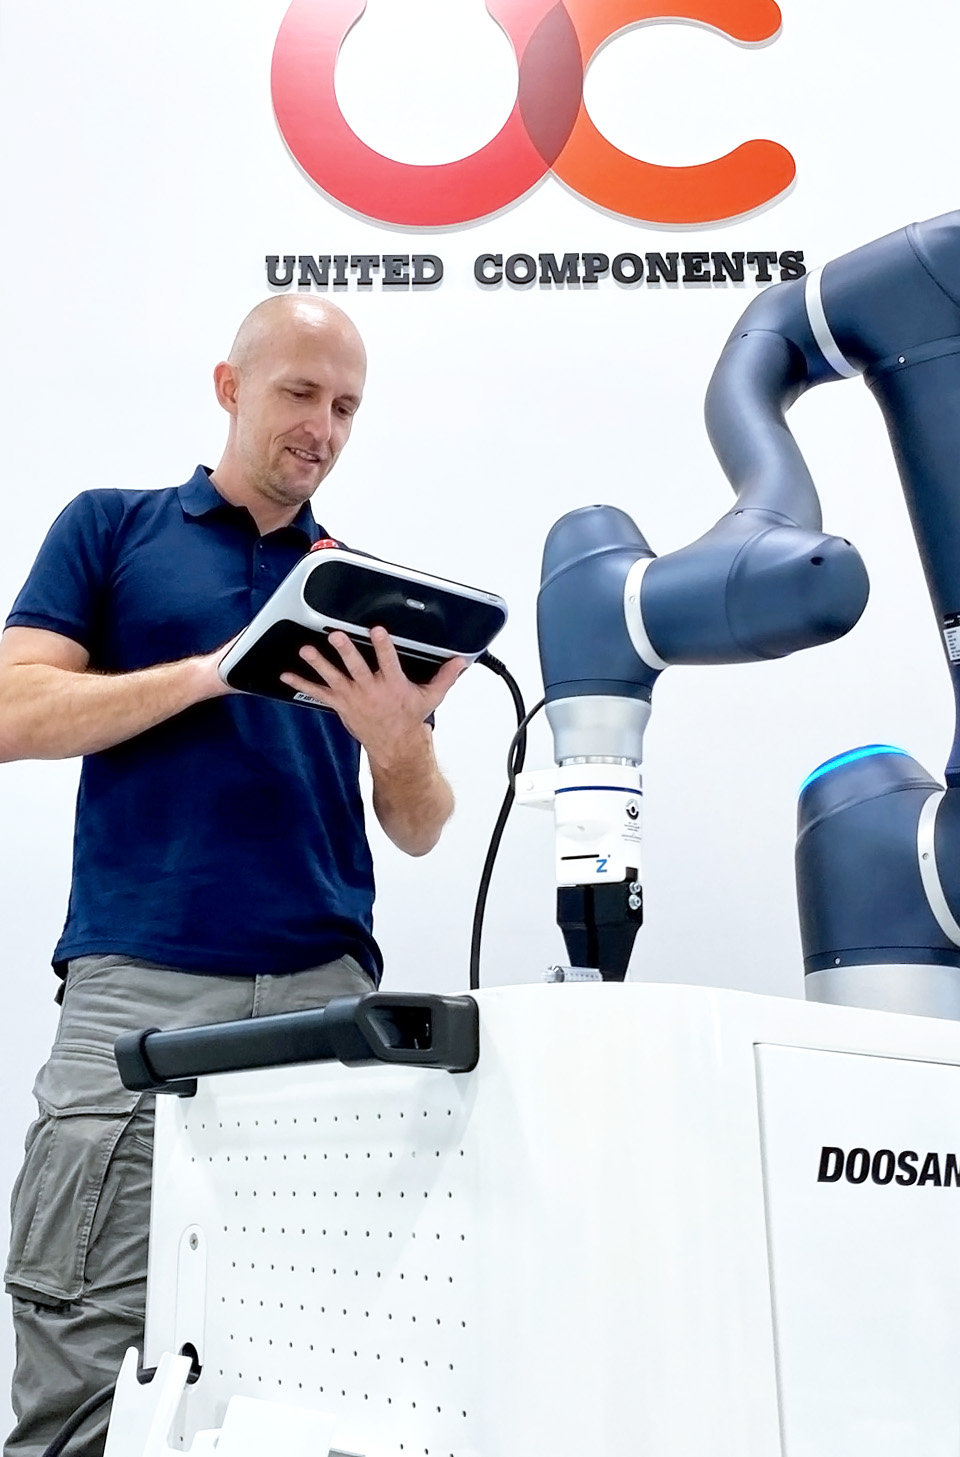 Doosan H2017 kollaborativ robot - United Components